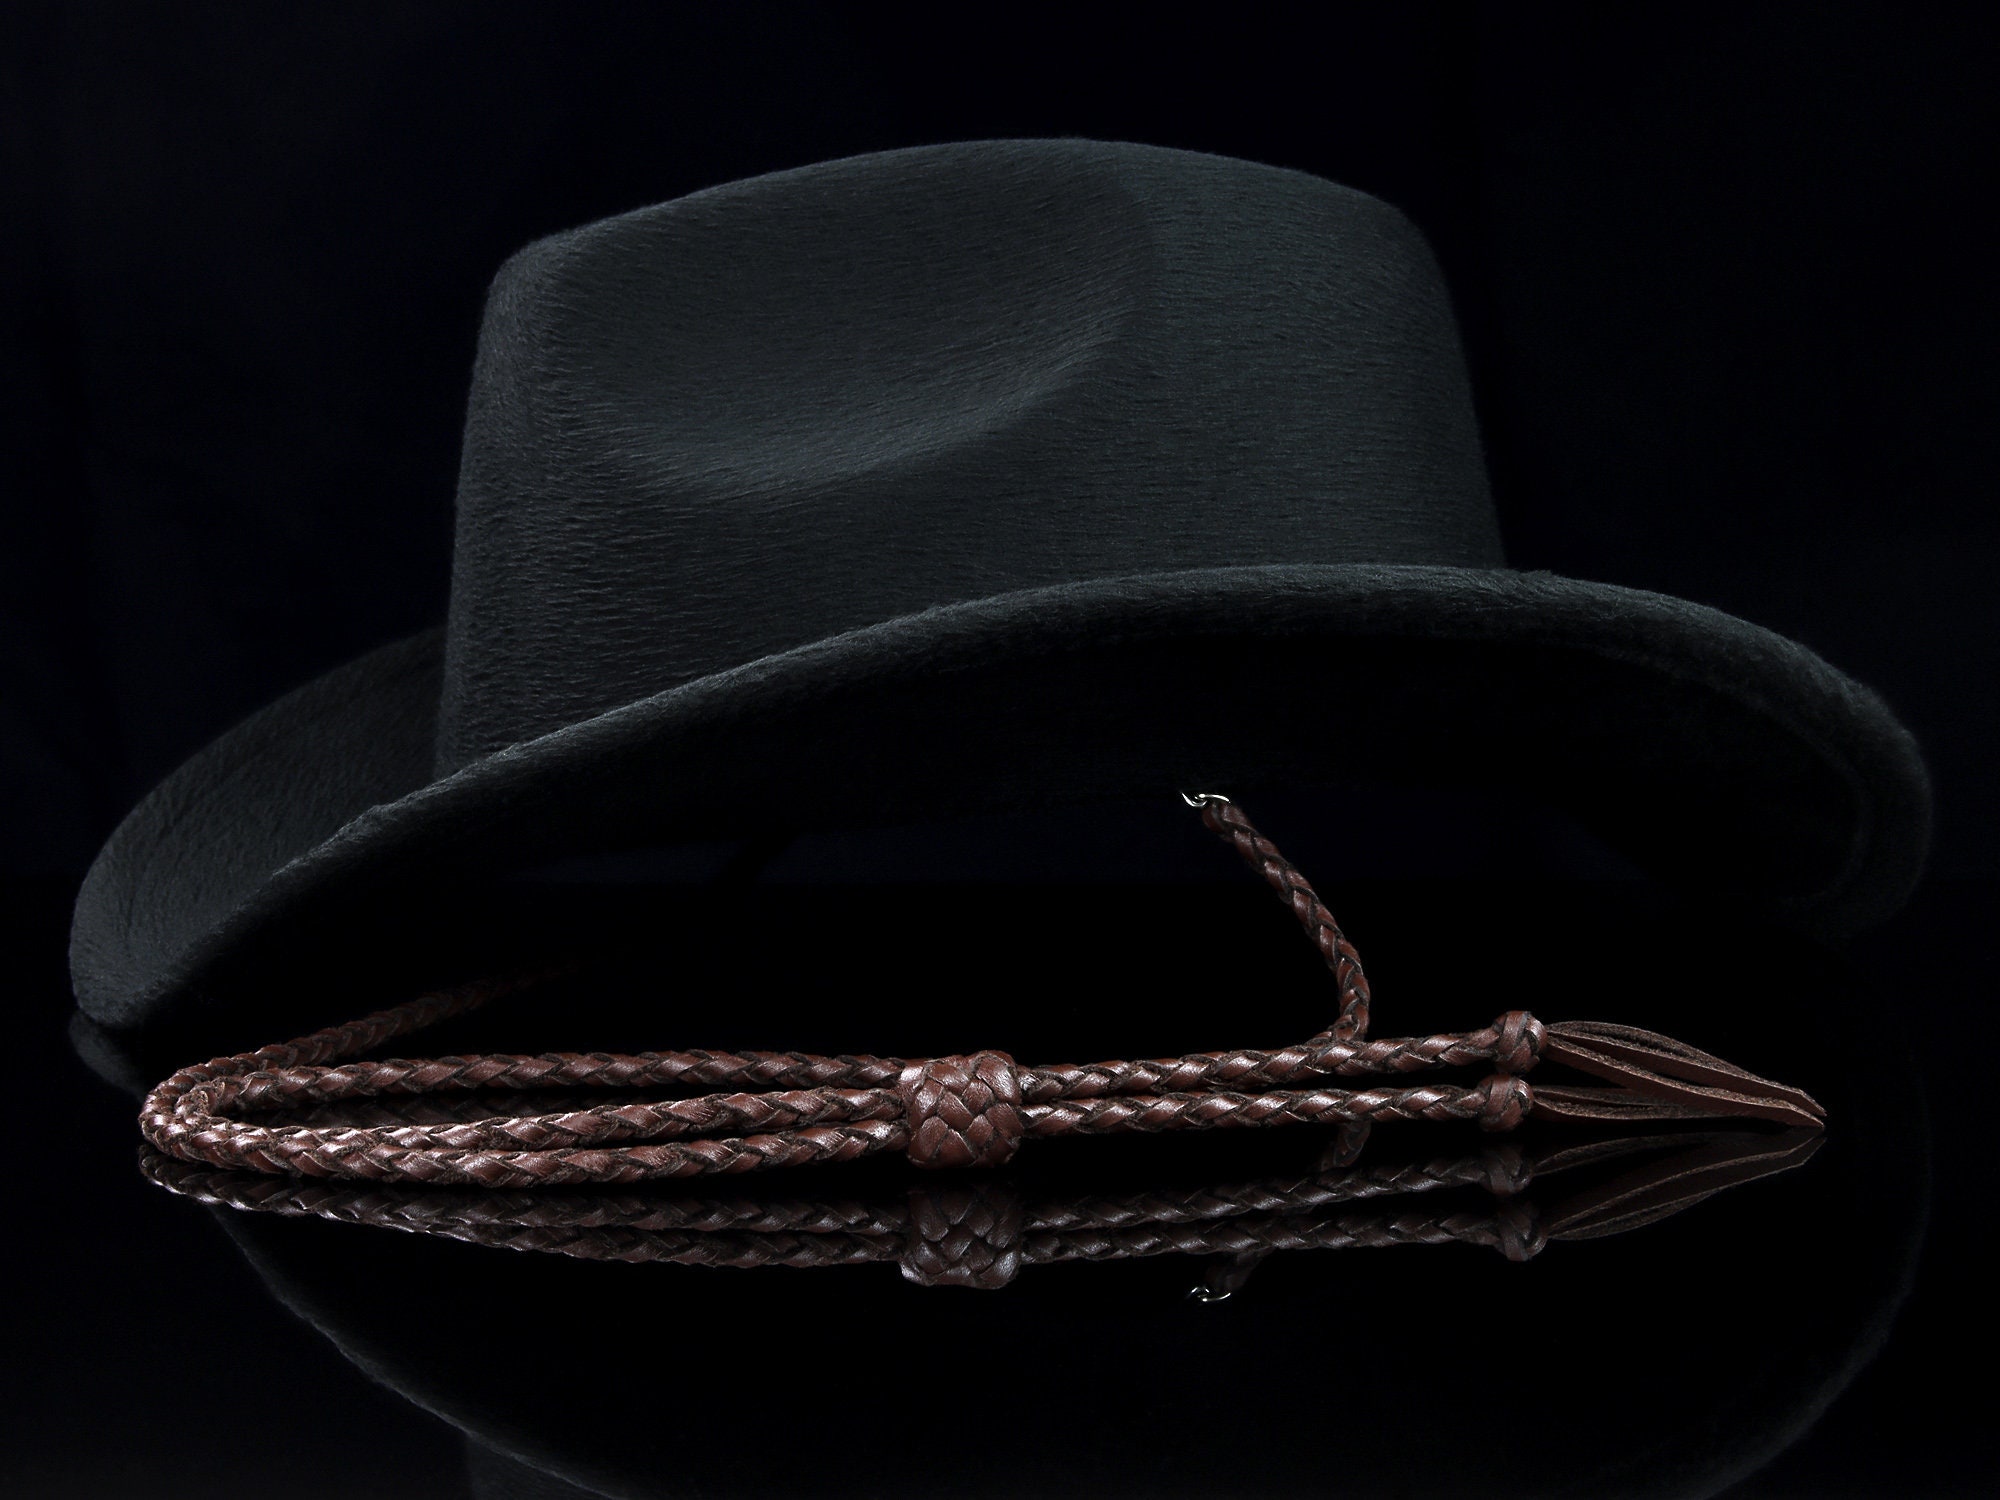 Dark Brown Hand-braided Leather Stampede String, Cowboy Hat Accessories, 